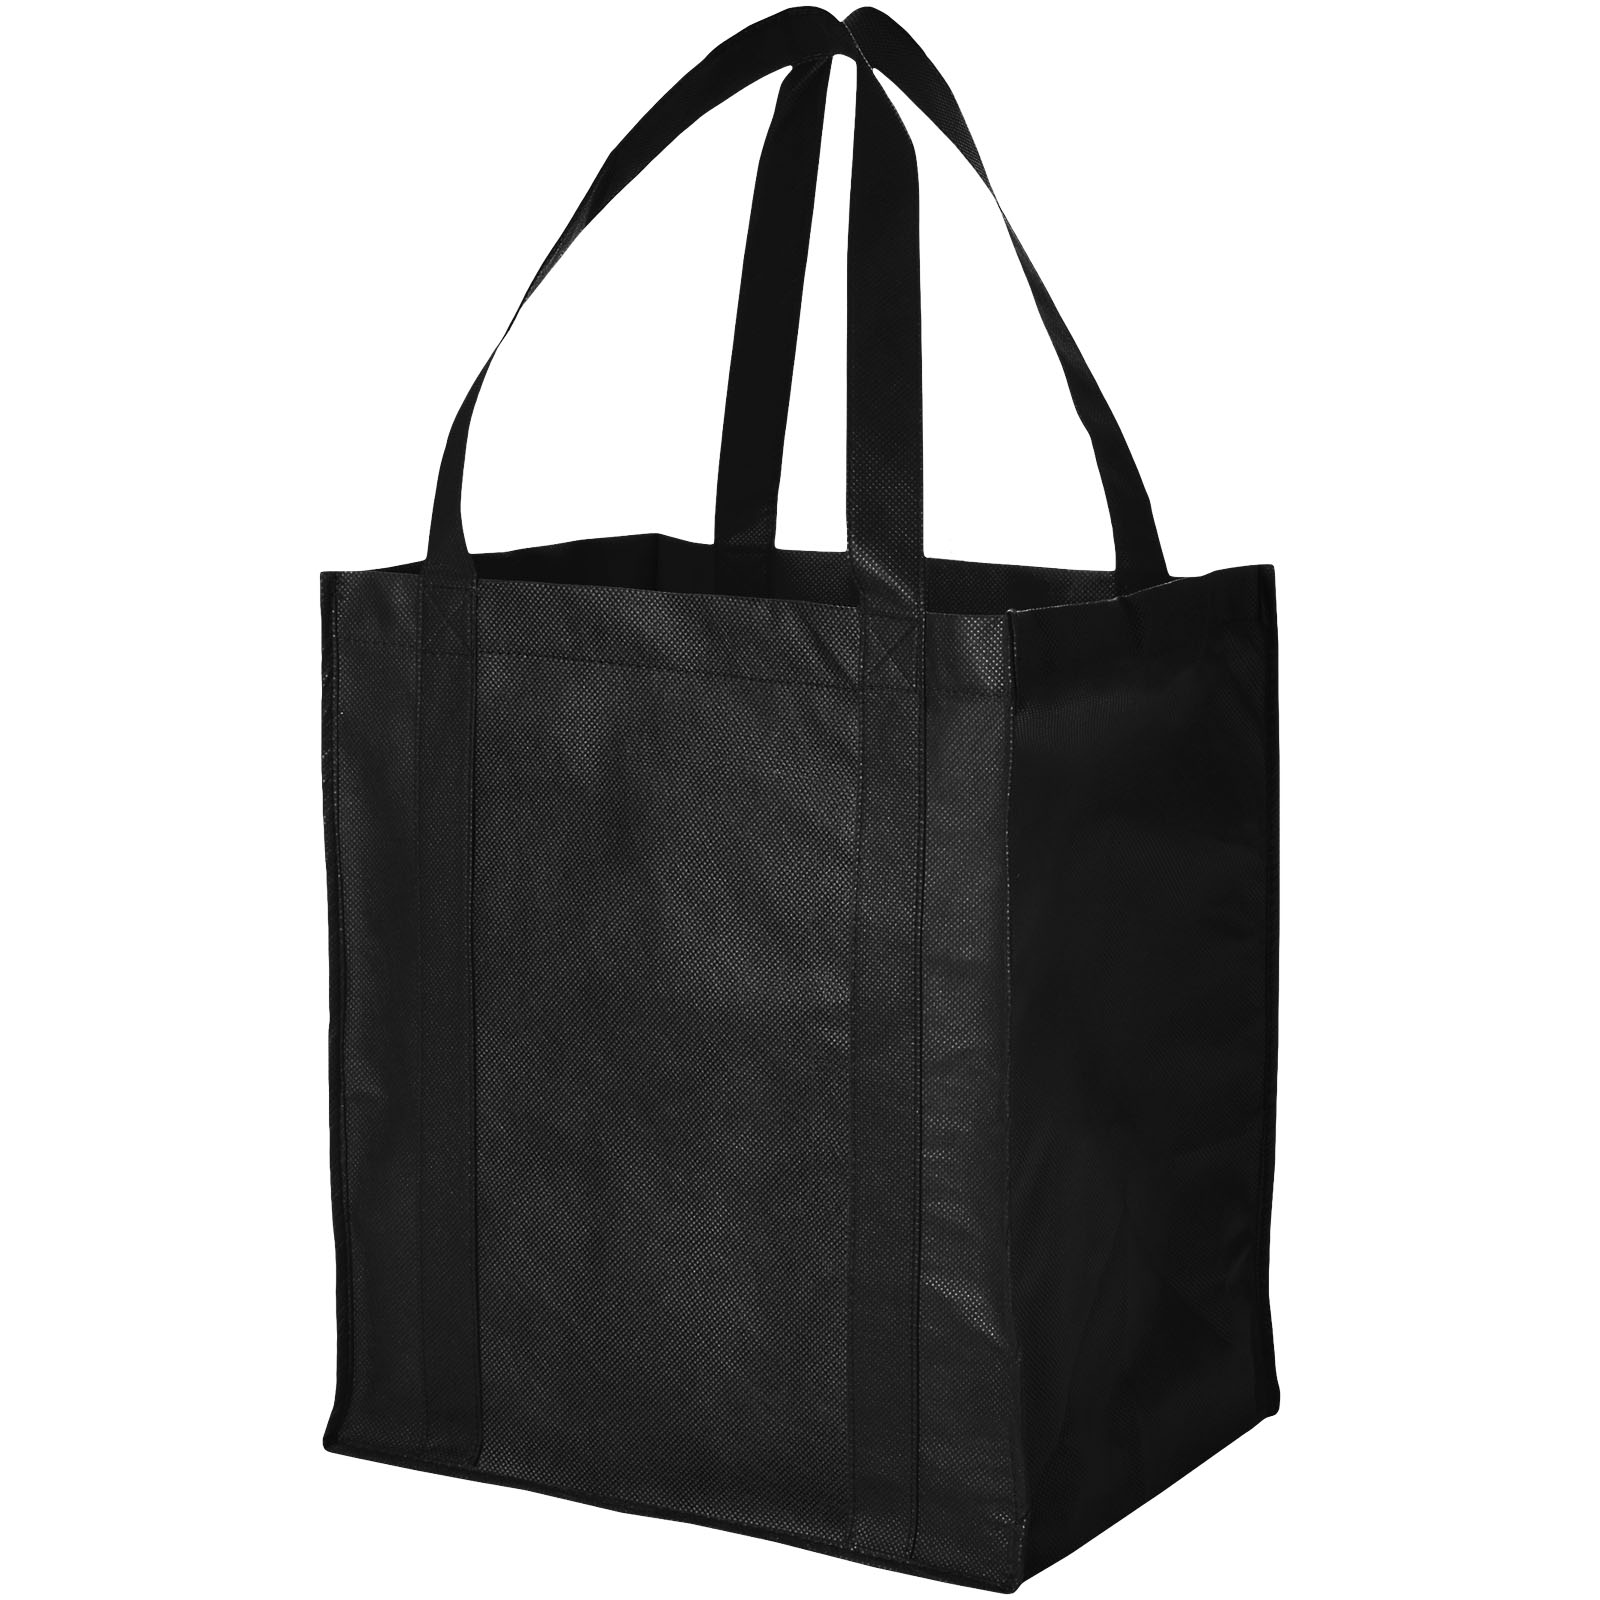 Bags - Liberty bottom board non-woven tote bag 29L